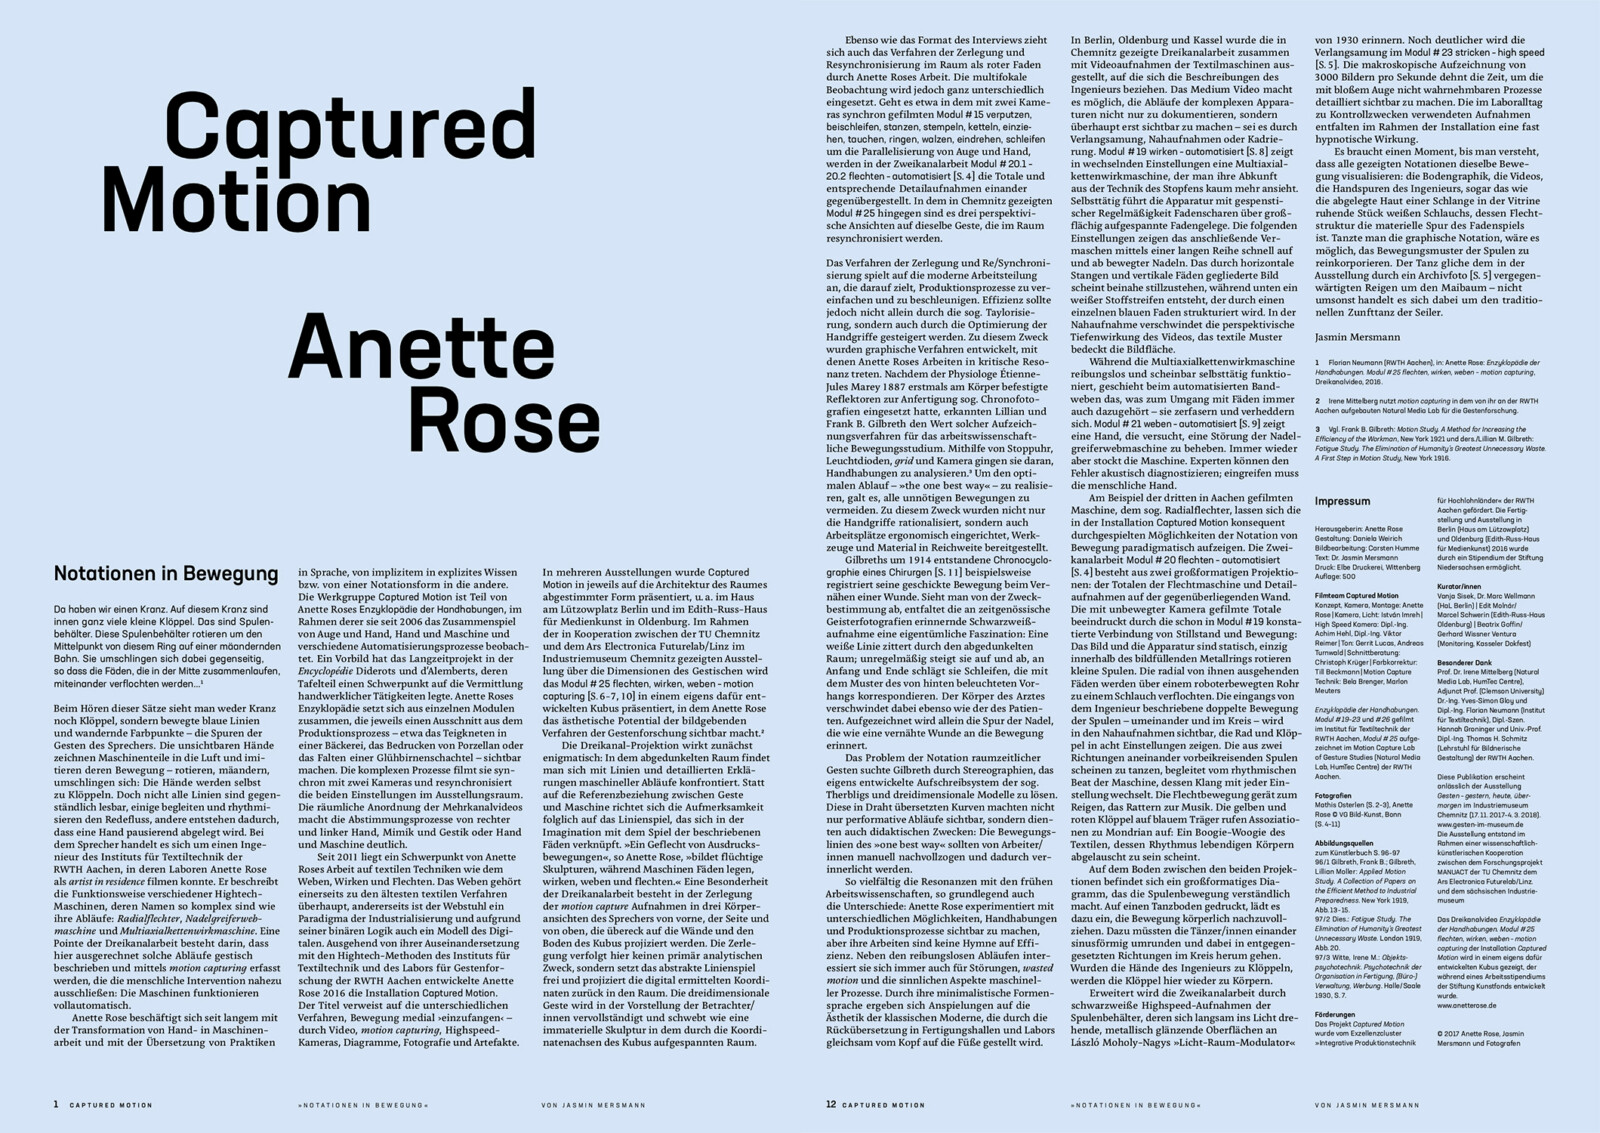 Anette Rose Notationen in Bewegung 2017